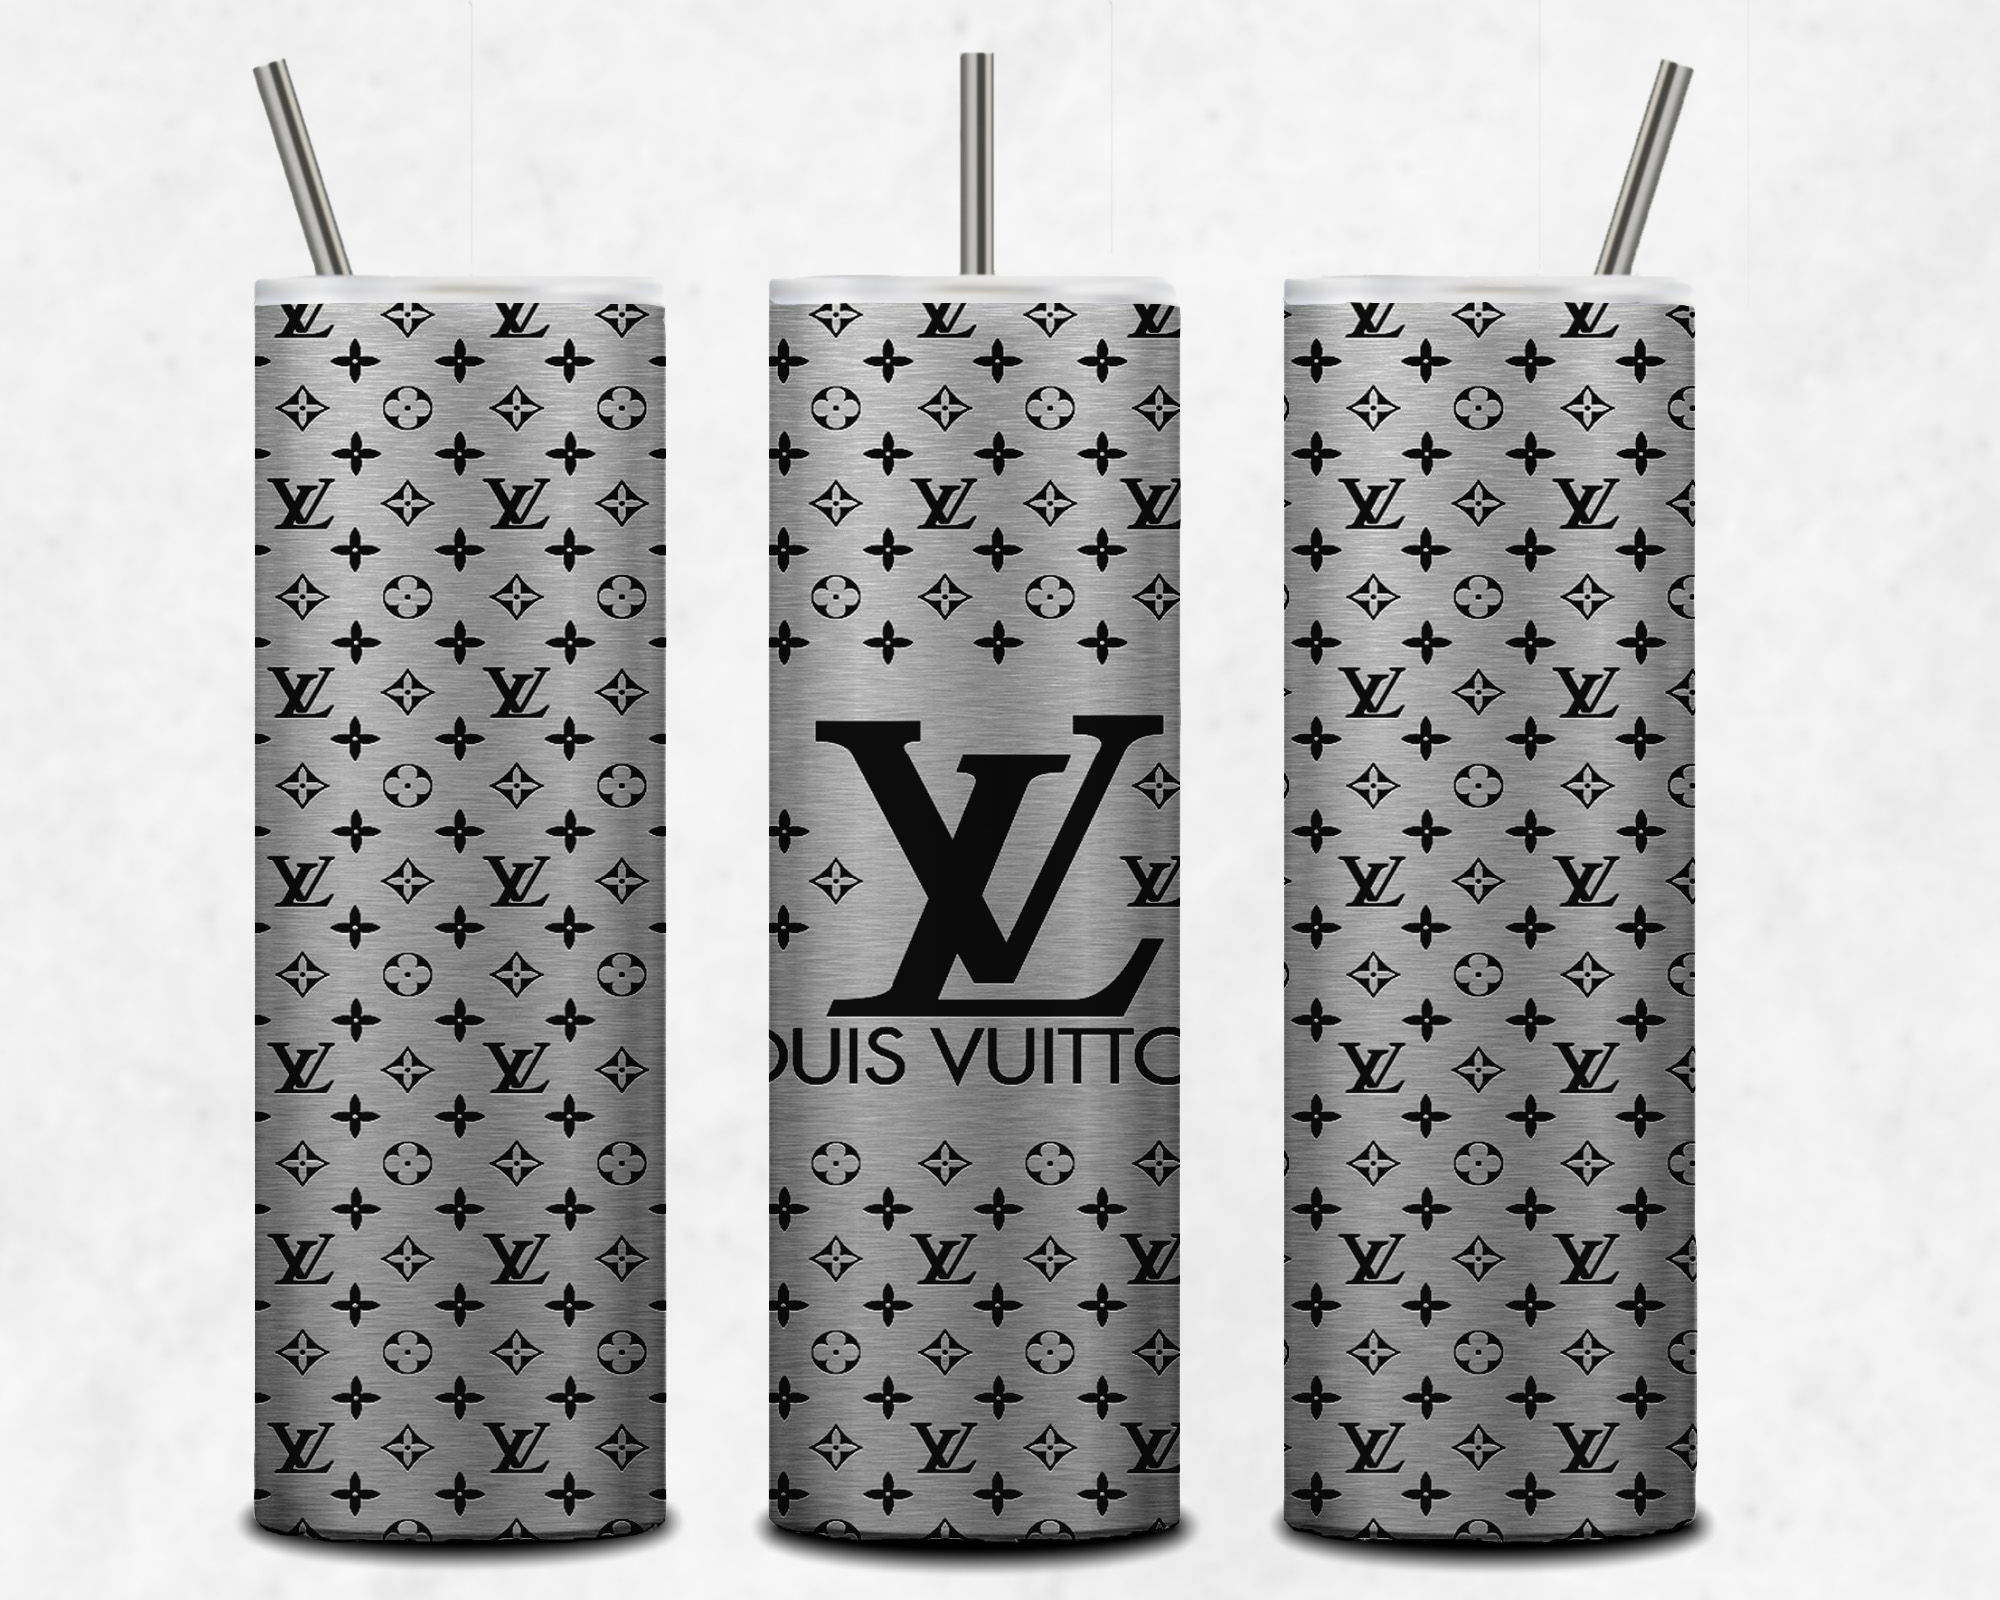 LV Louis Vuitton Luxury Brand Fashion Tumbler Wrap 20oz Skinny